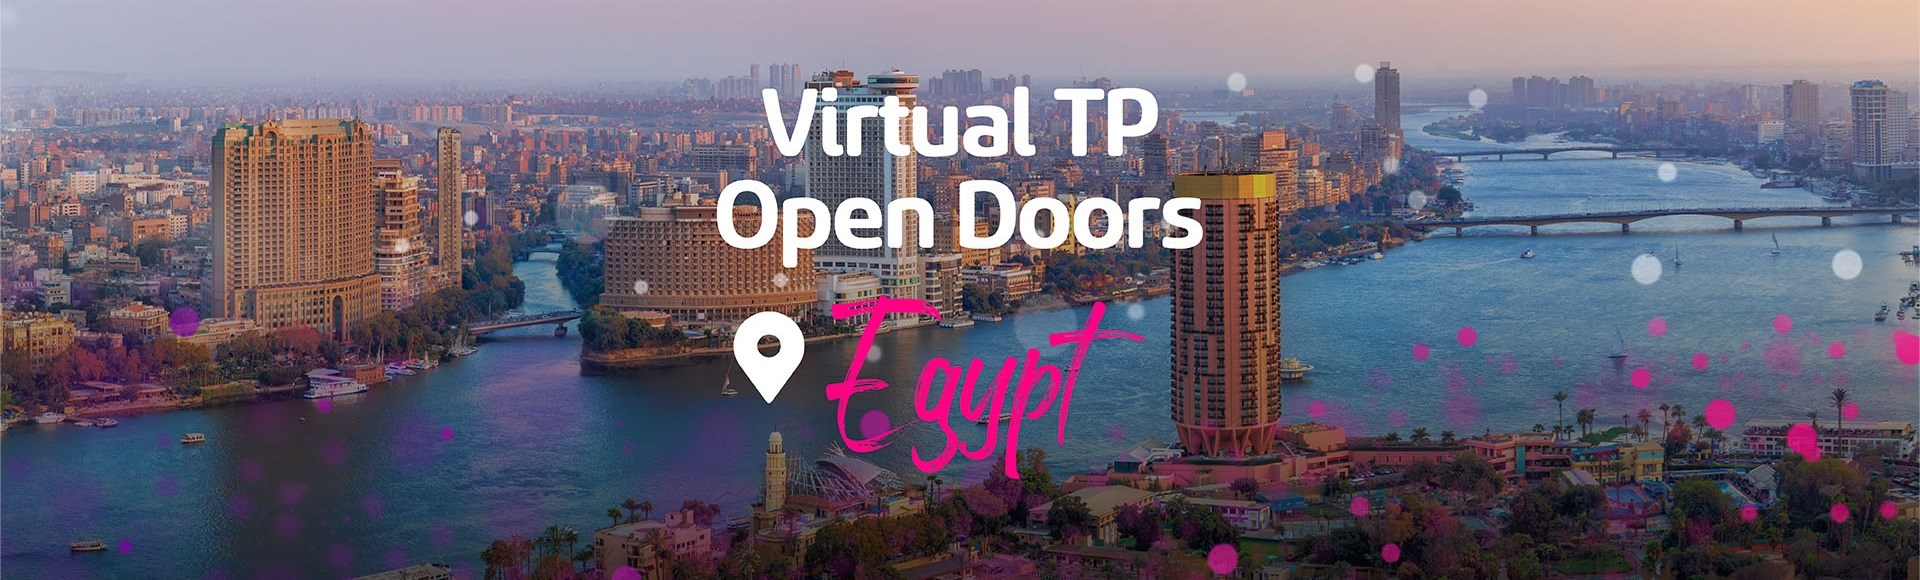 Virtual TP Open Doors Next Stop: Egypt 